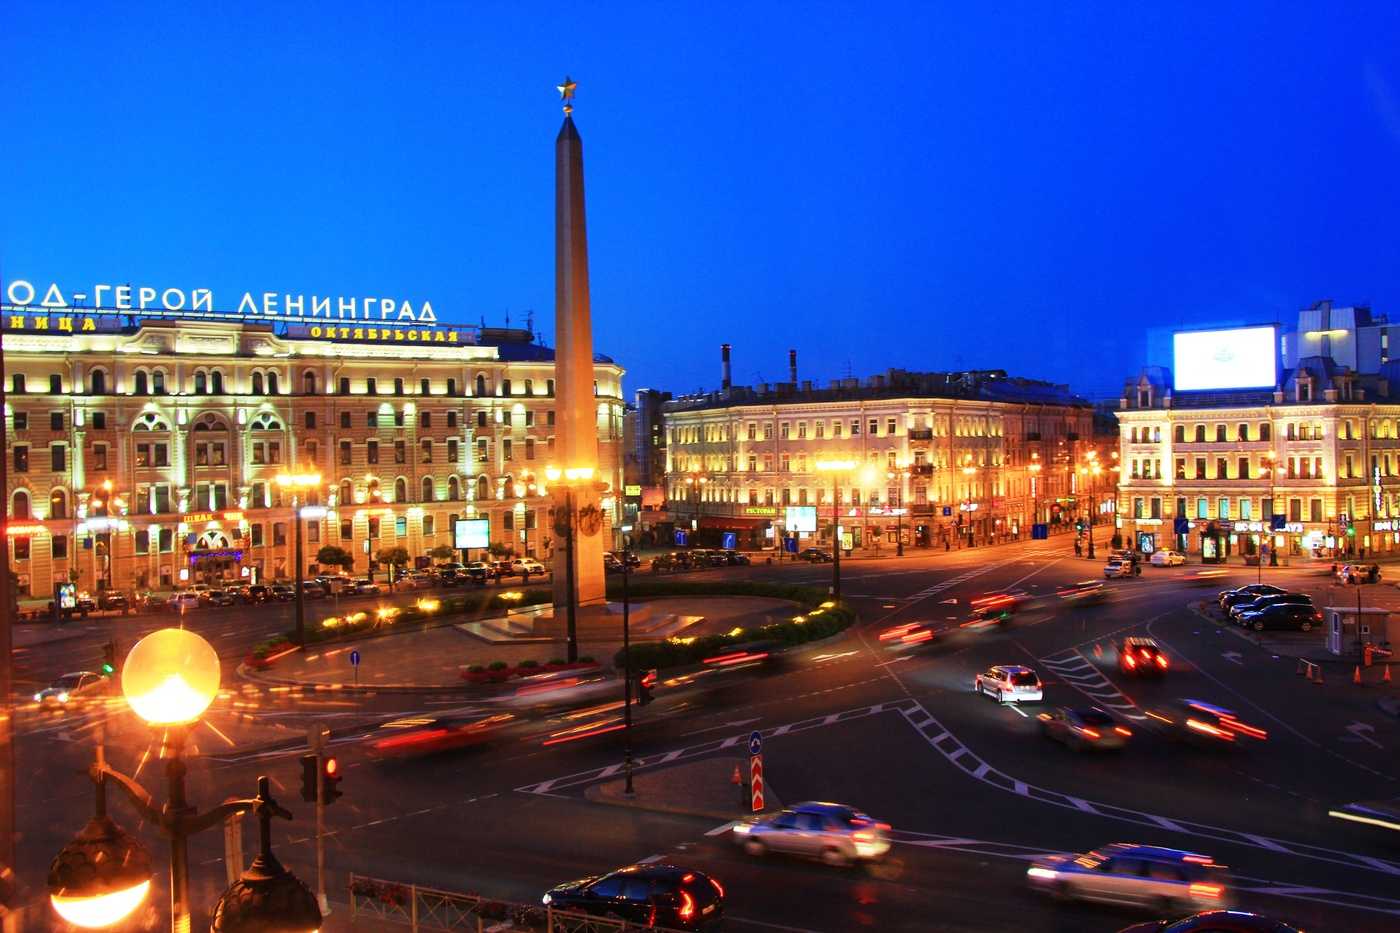 Площадь Восстания - одна из центральных и известных площадей в Санкт-Петербурге Центр площади украшает обелиск, а по периметру расположены исторические здания, в том числе павильон станции метро, вокзал, гостиница и торговый комплекс